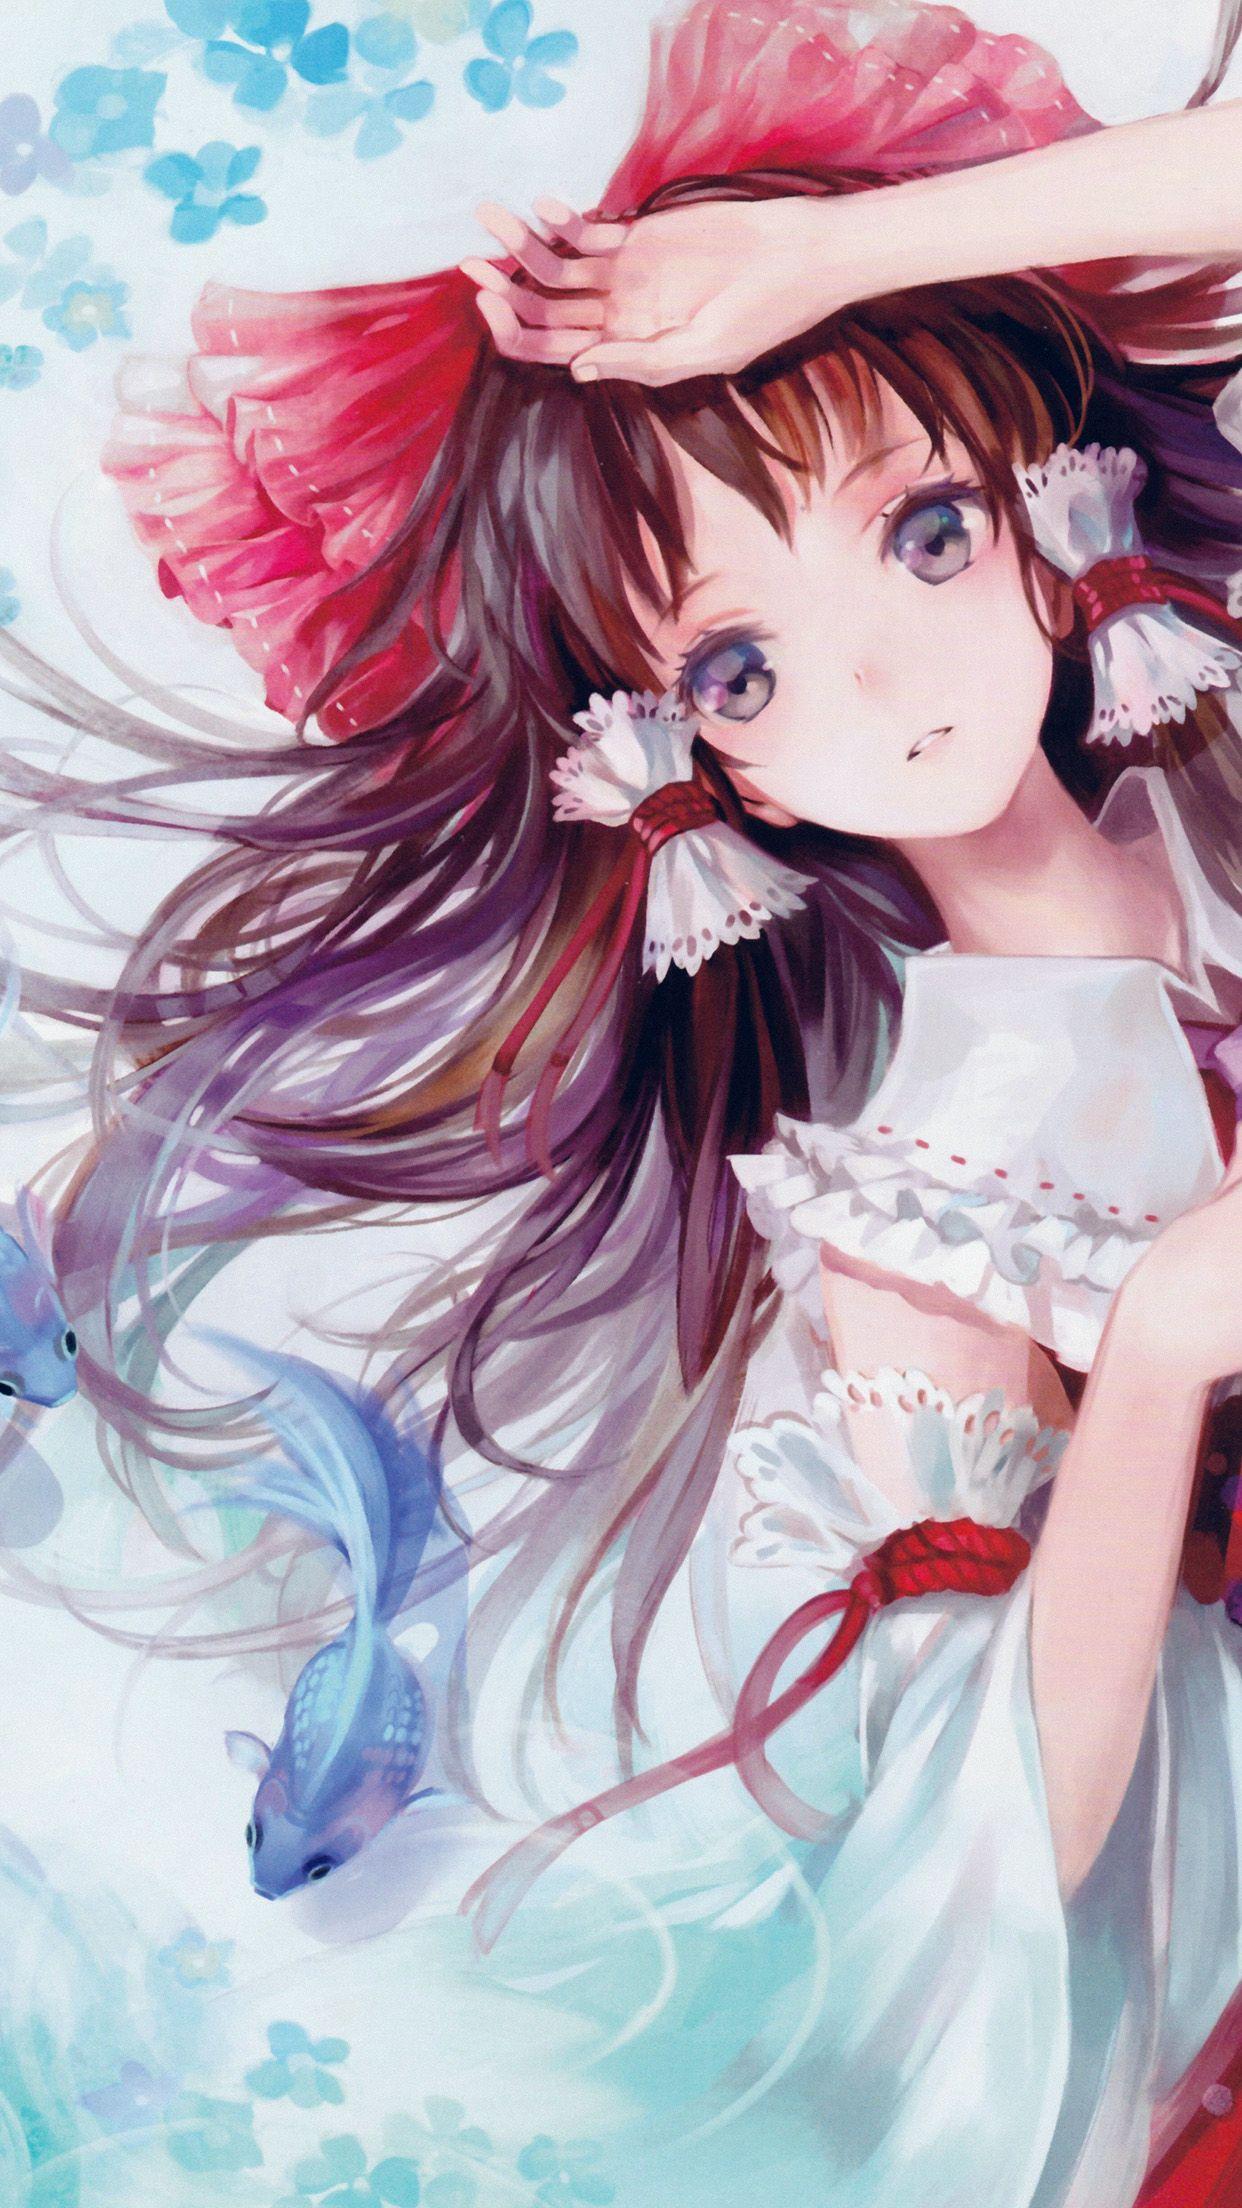 Beautiful Anime Girl iPhone Wallpaper Free Beautiful Anime Girl iPhone Background